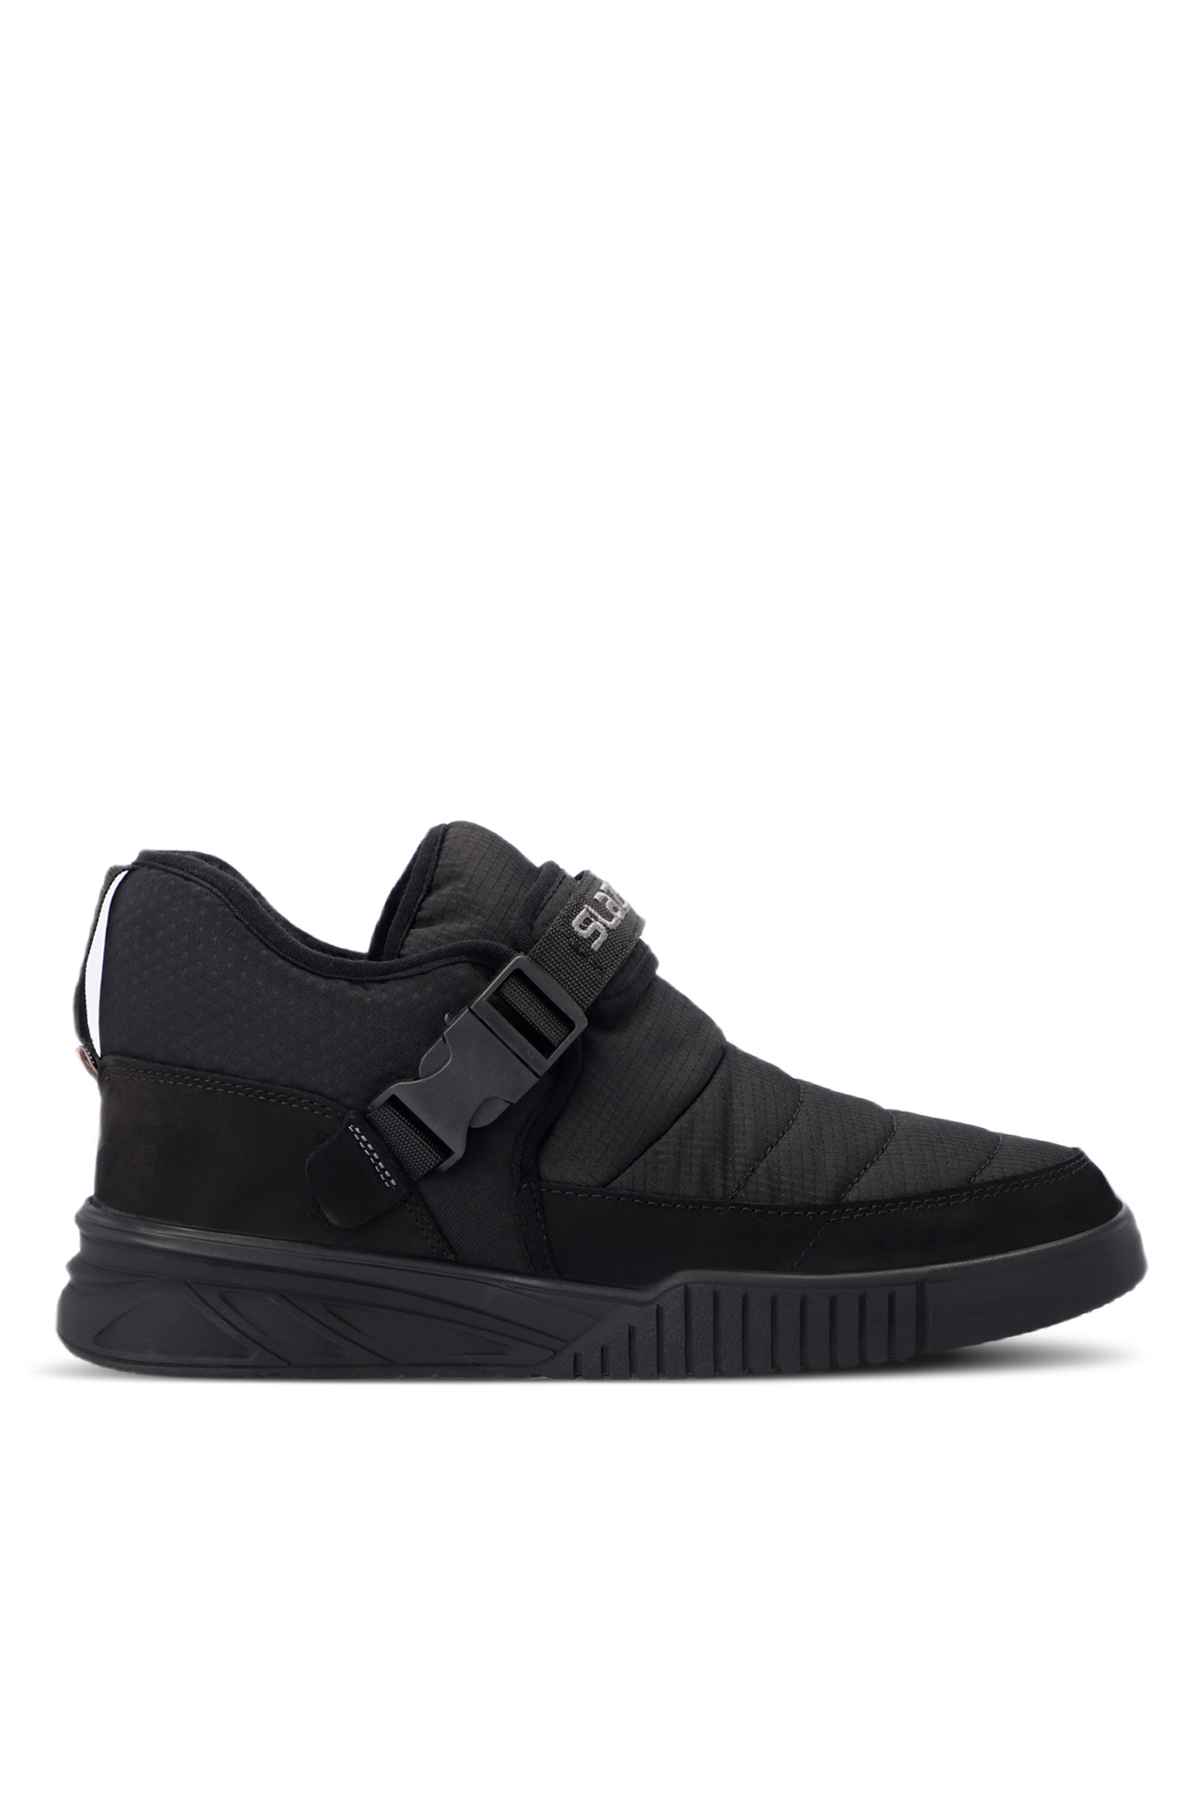 NEWYORK I Sneaker Shoes Unisex Black